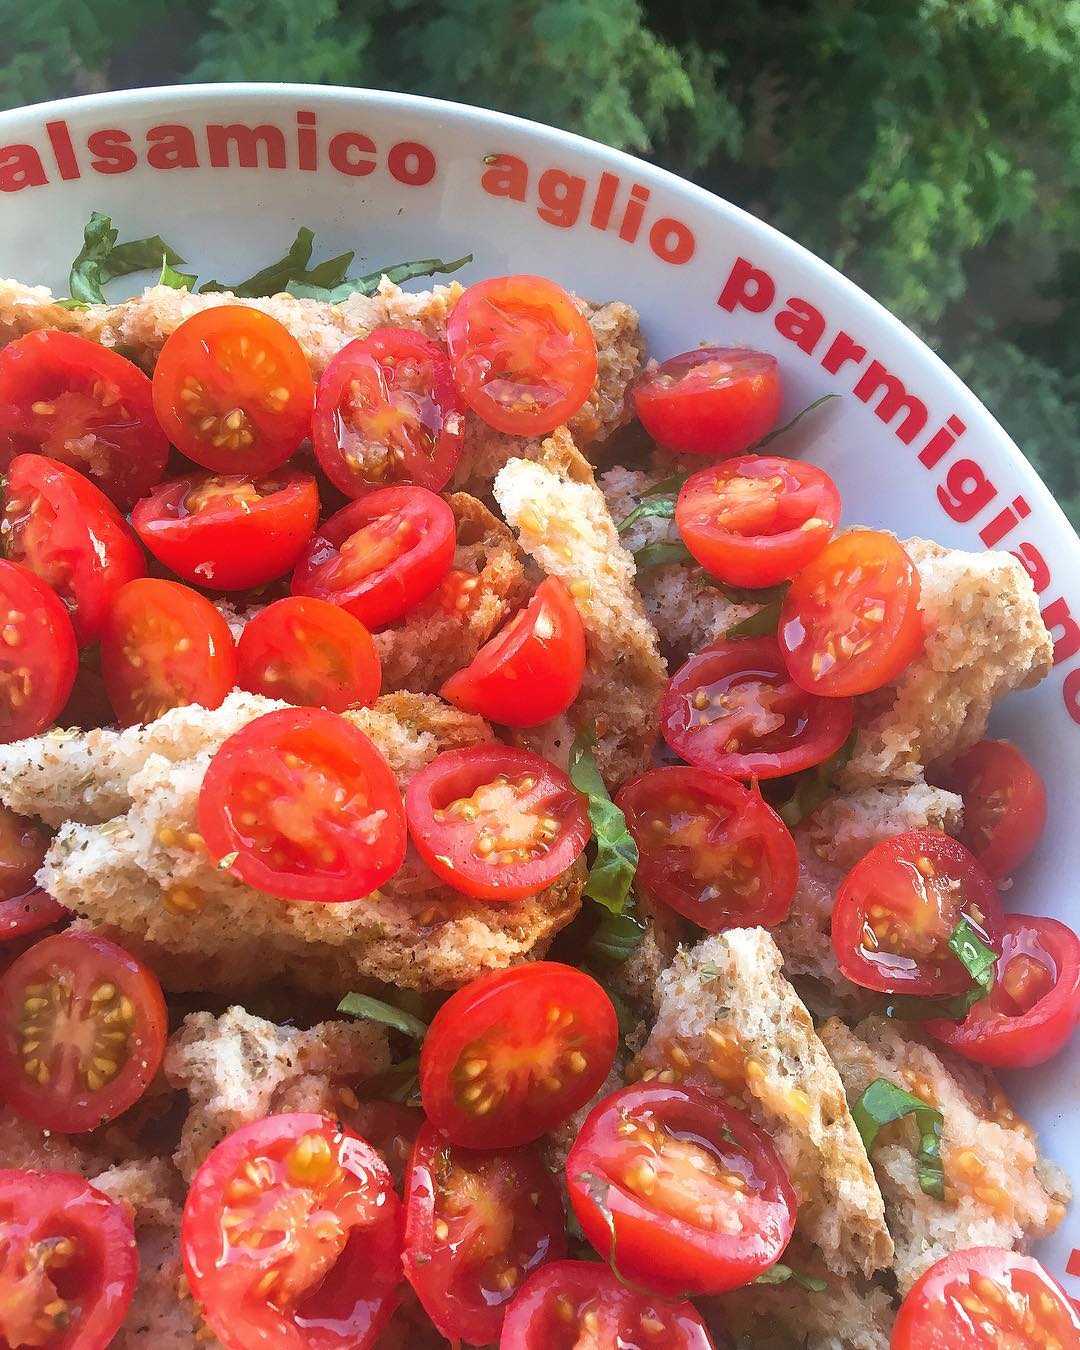 La Panzanella 🇮🇹 une recette typique du sud de l'Italie que j'adorais manger avec ma Nonna ❤️ Du pain sec, des tomates, du basilic et de l'huile d'olive 🍅🍃